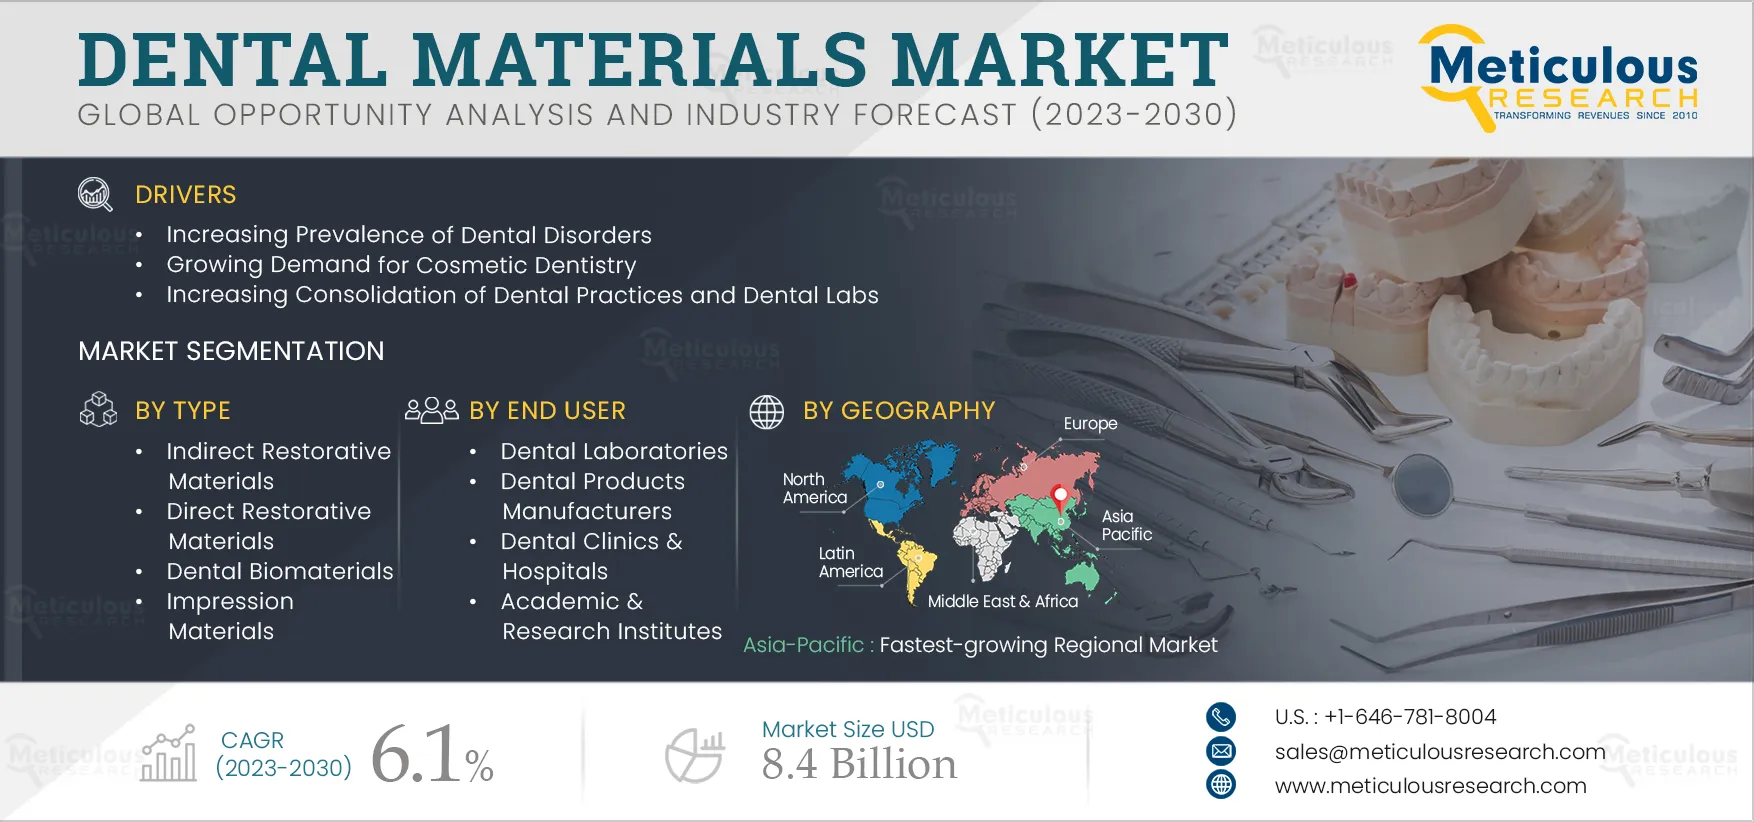 Dental Materials Market